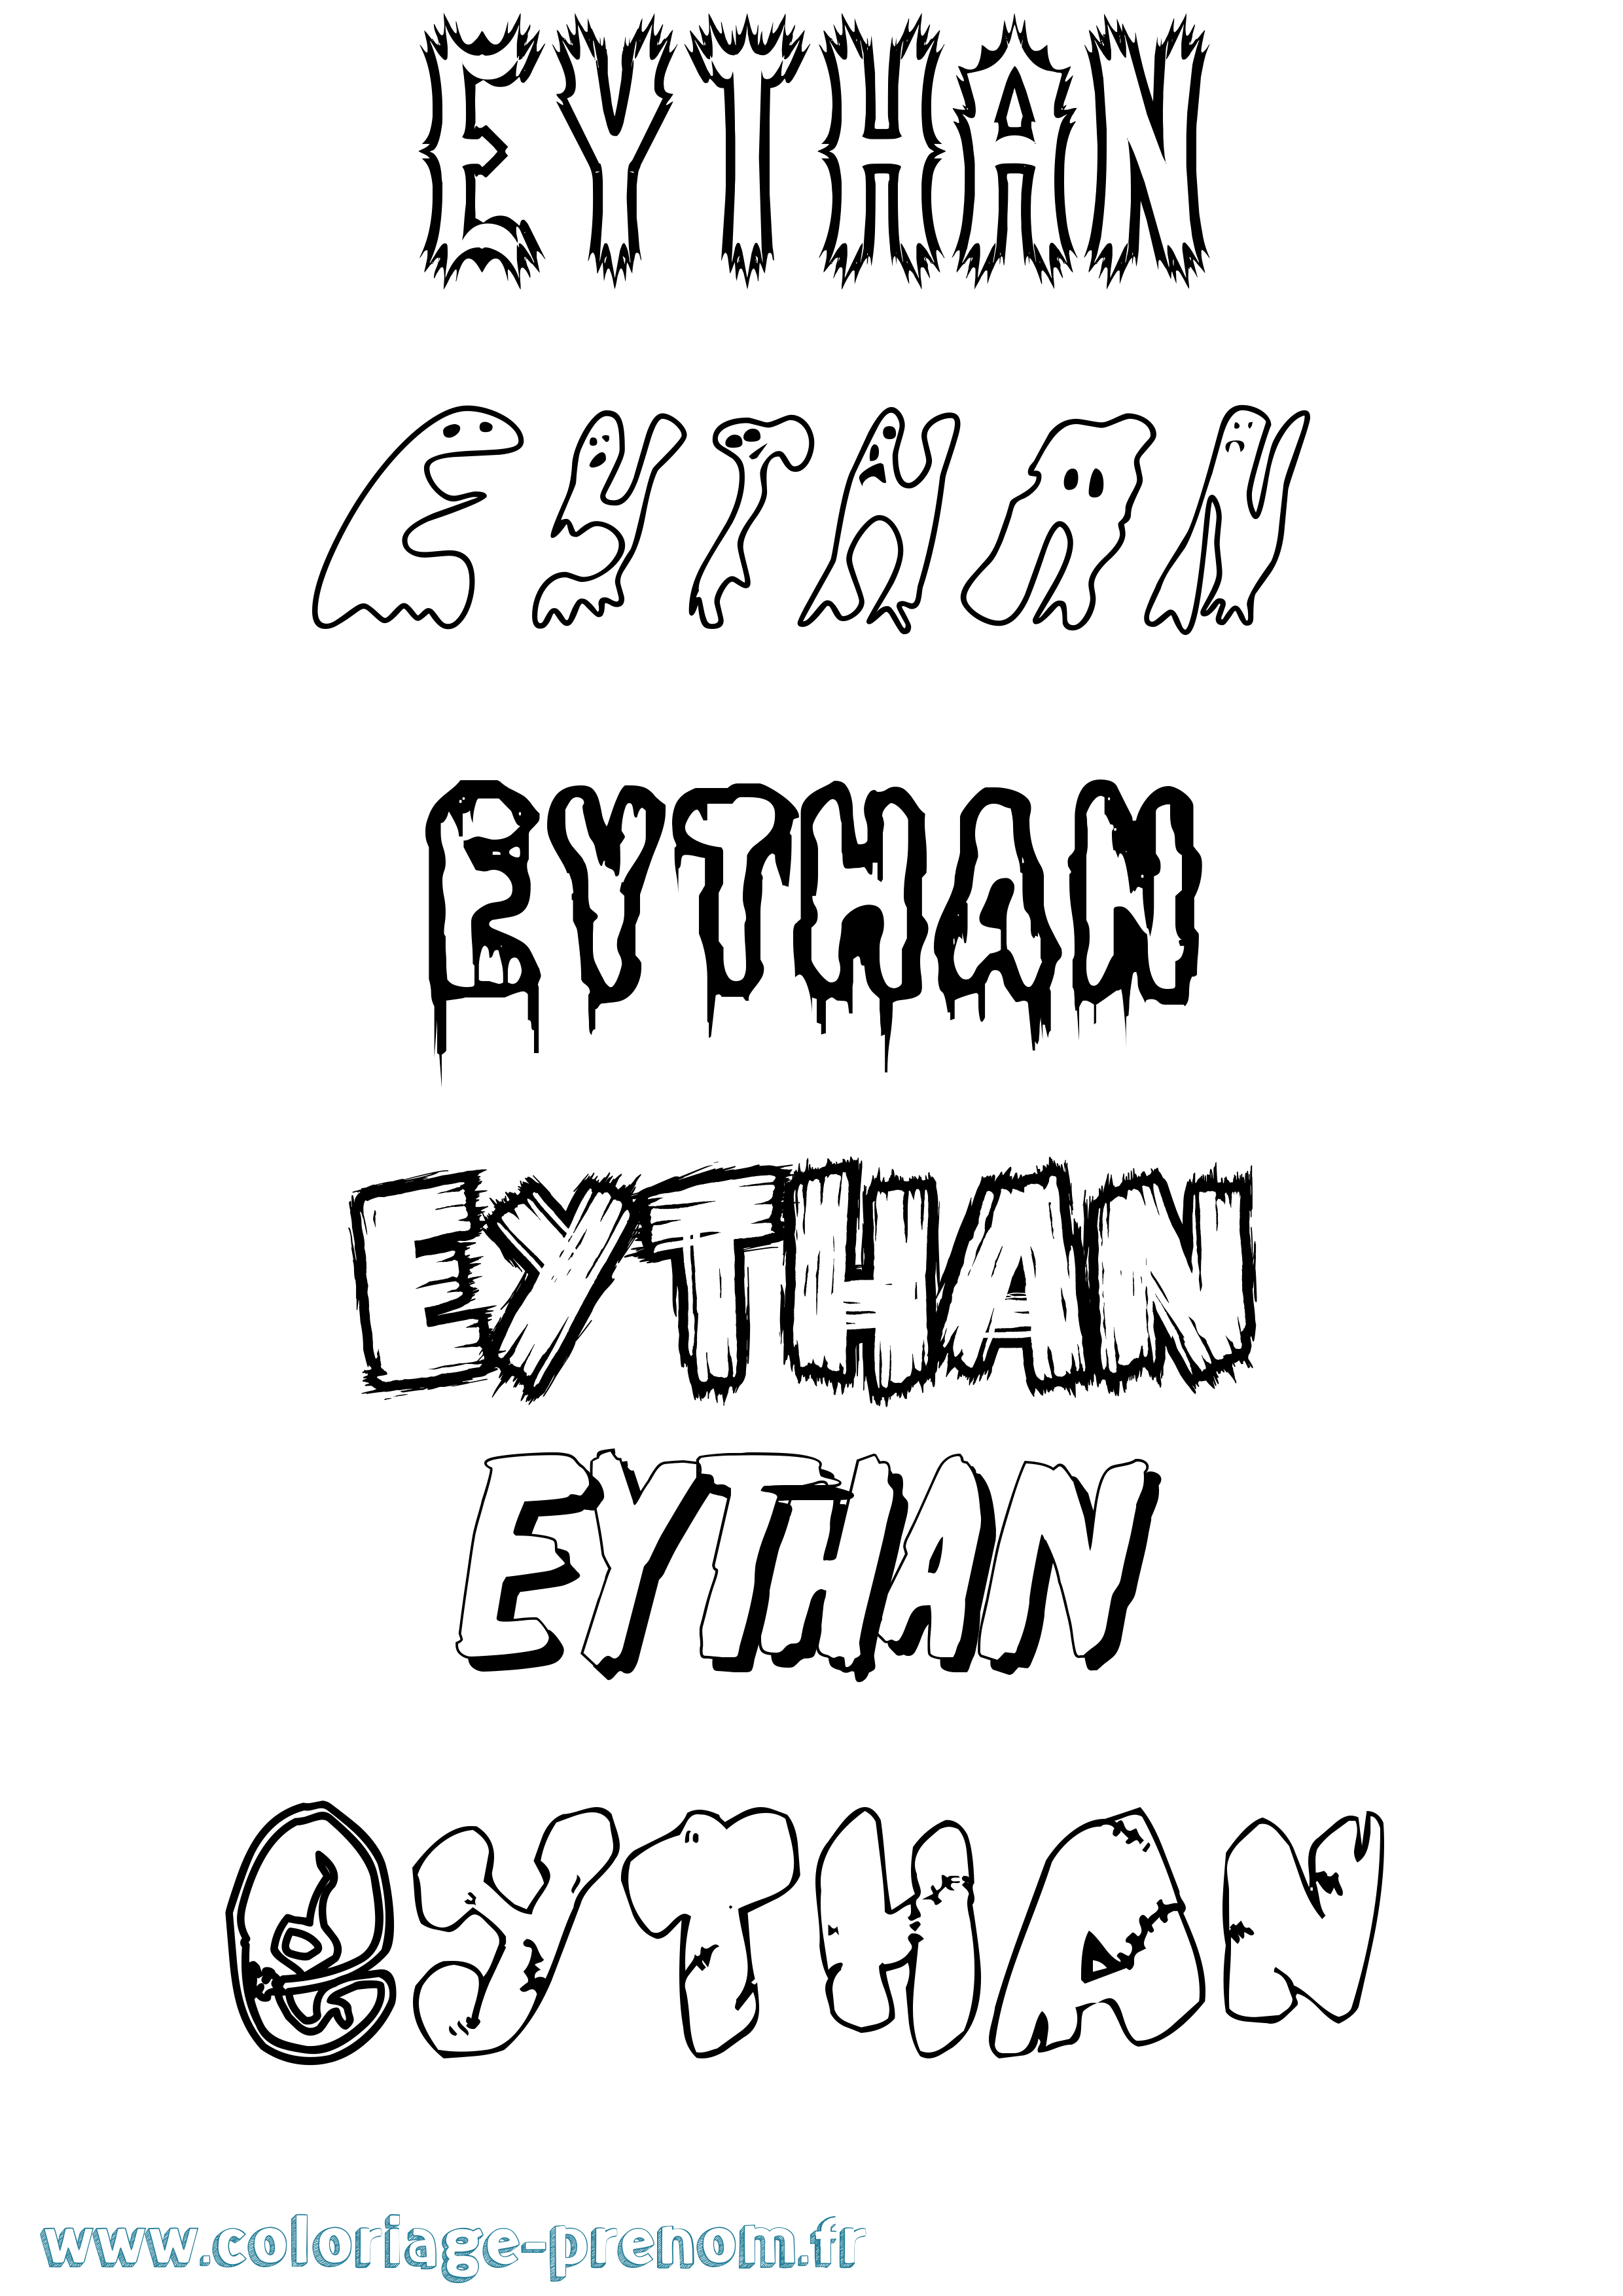 Coloriage prénom Eythan